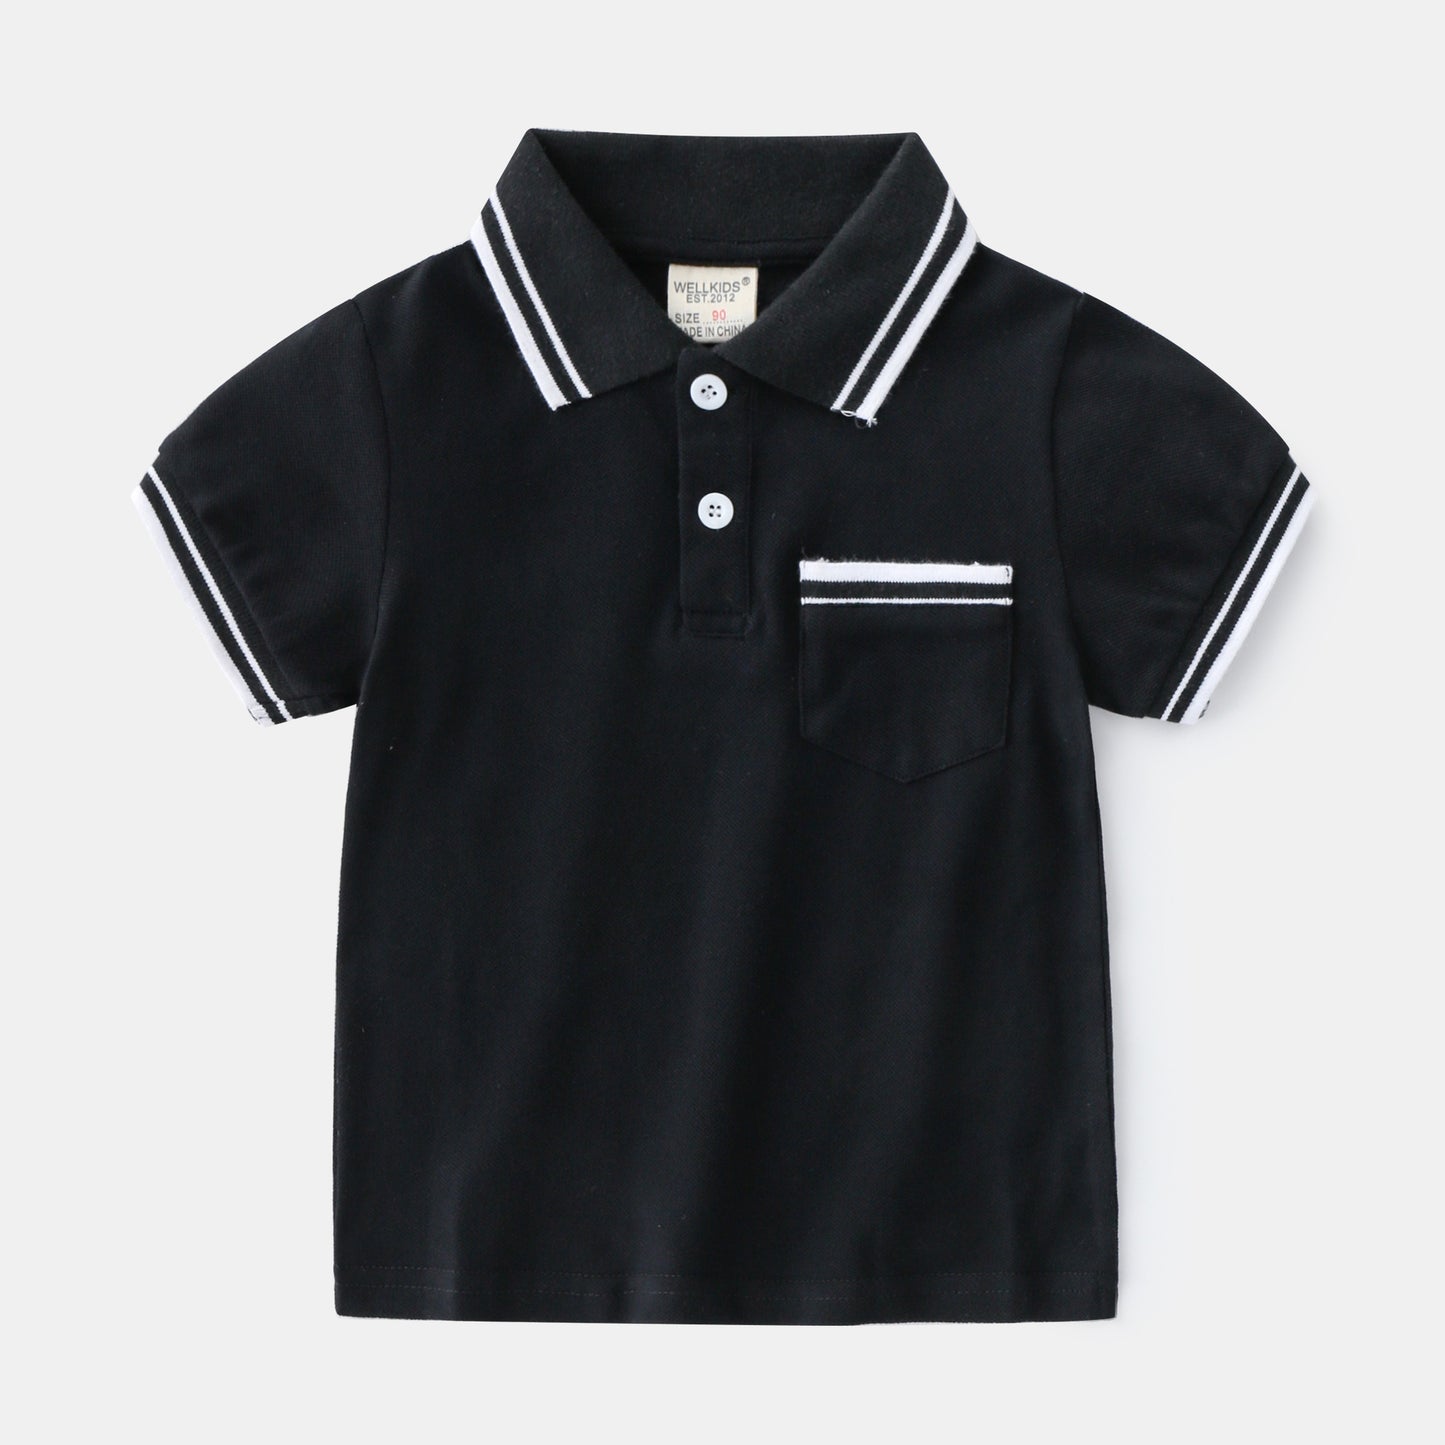 Black Trendy Children's Polo T-Shirts